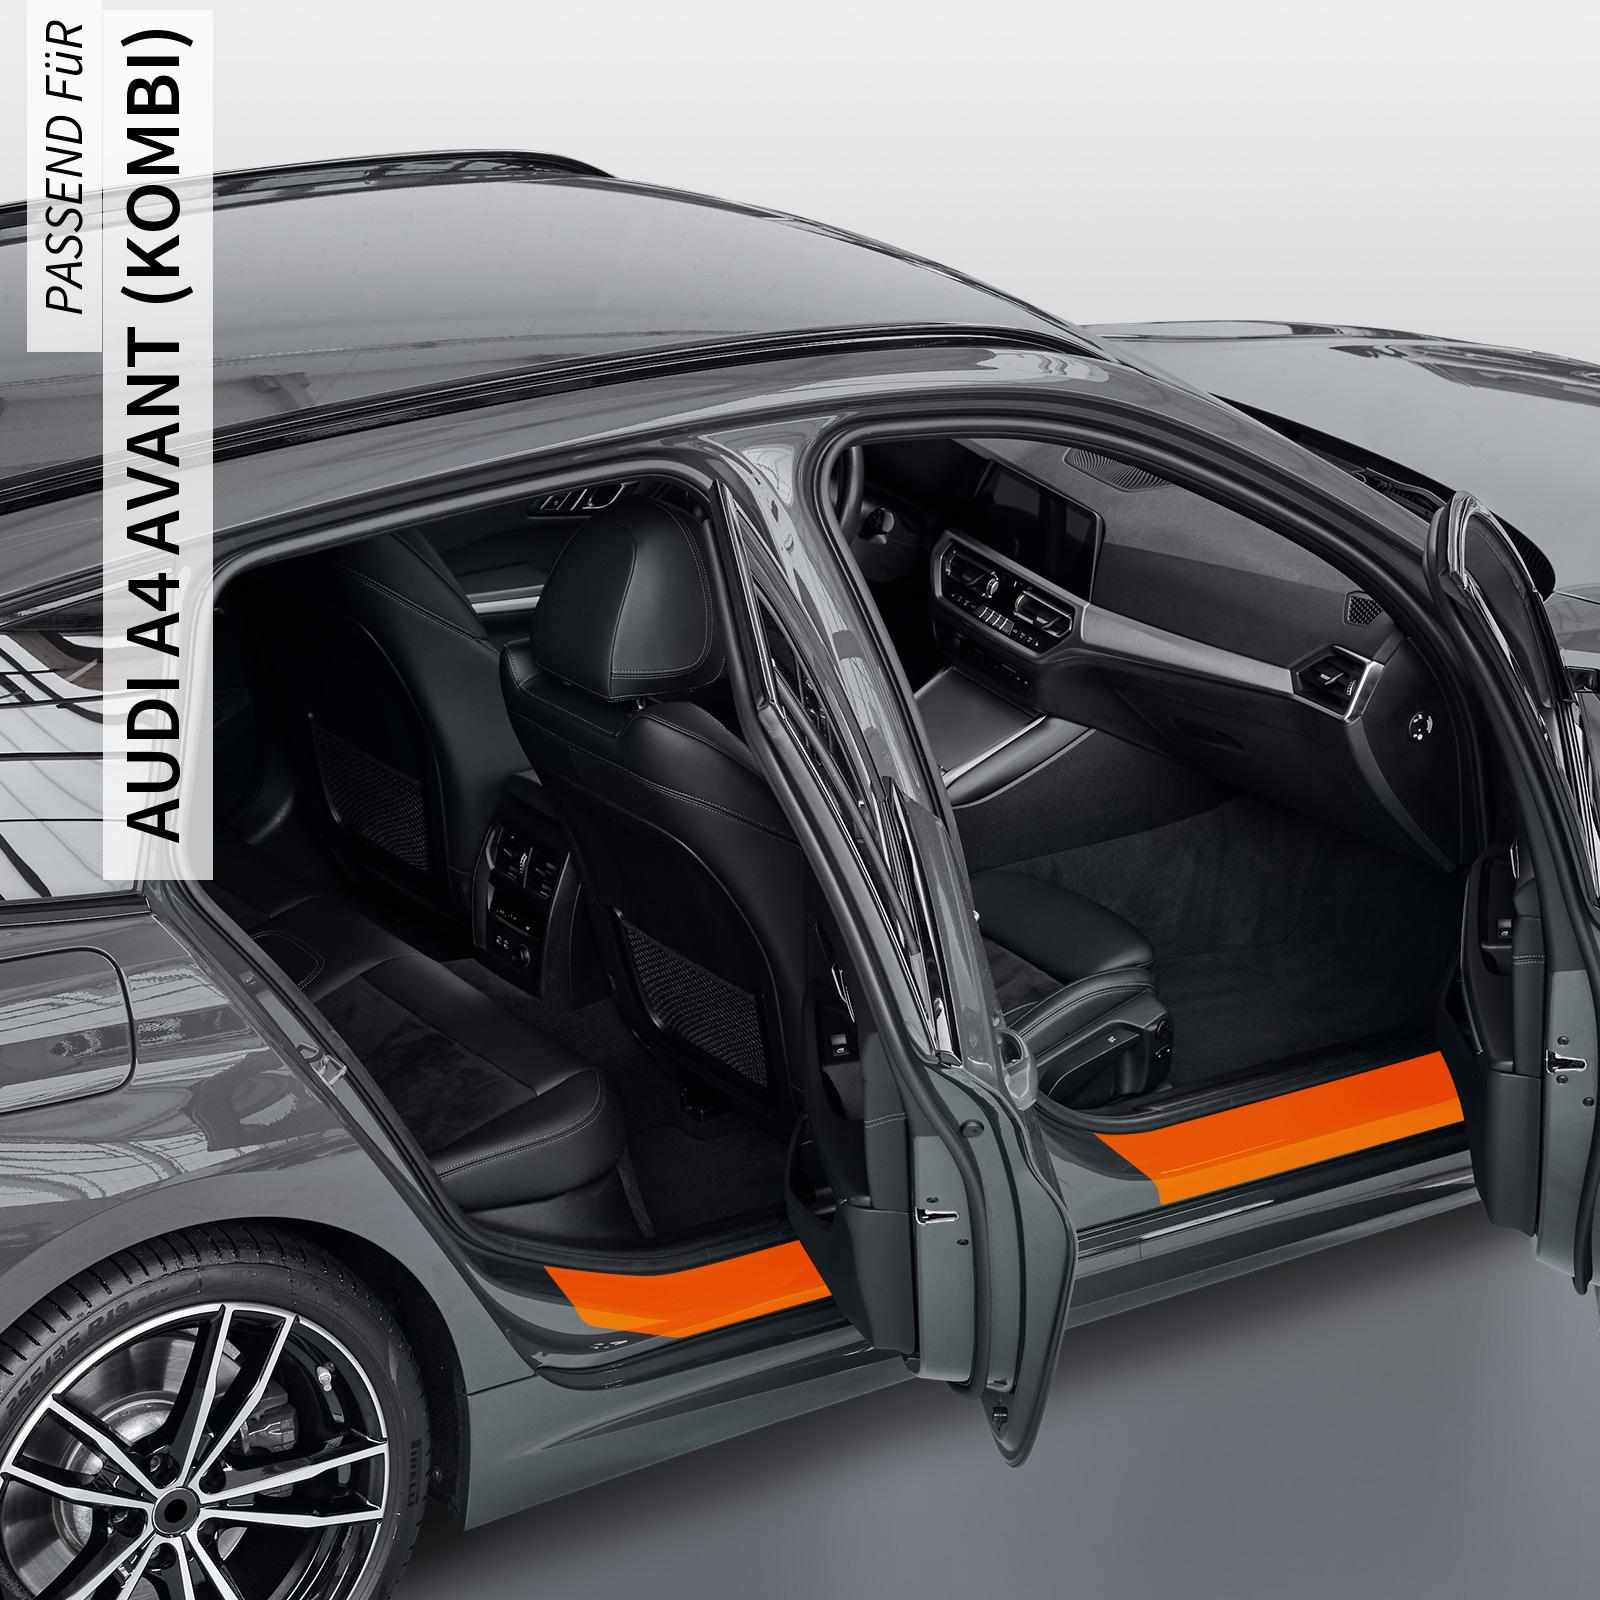 Einstiegsleistenschutzfolie für Audi A4 Avant (Kombi) B8, Typ 8K, Facelift, BJ 11/2011-2015